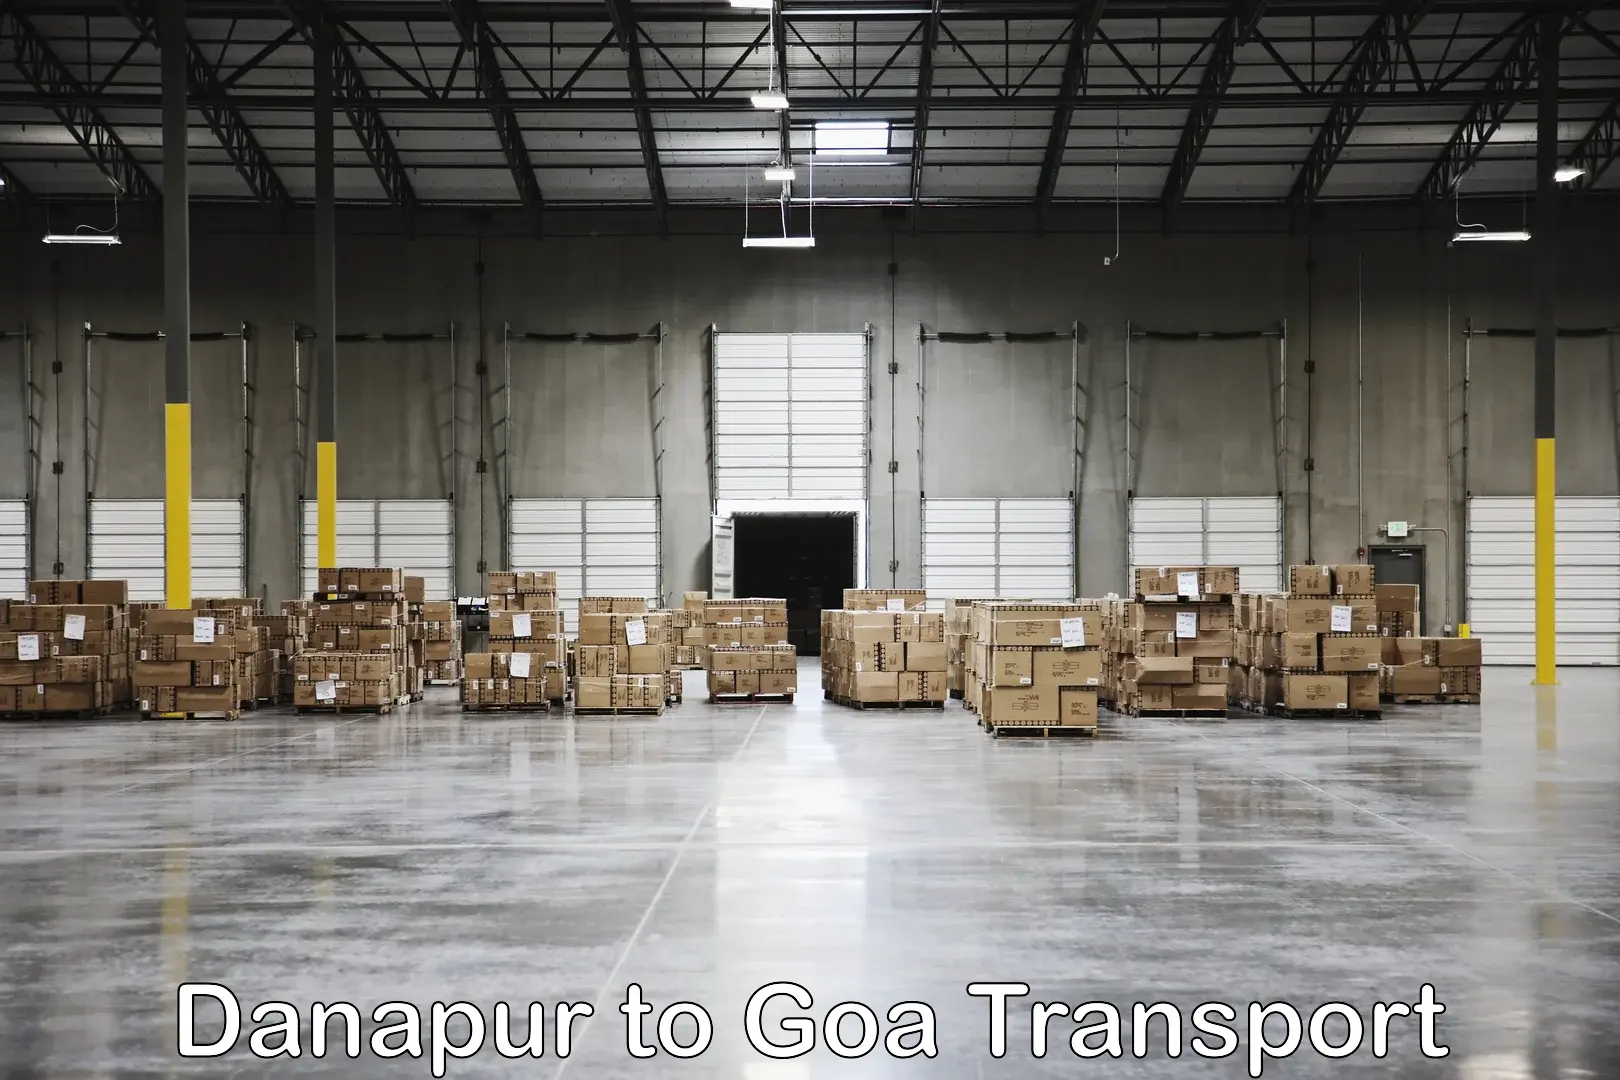 Delivery service Danapur to Goa